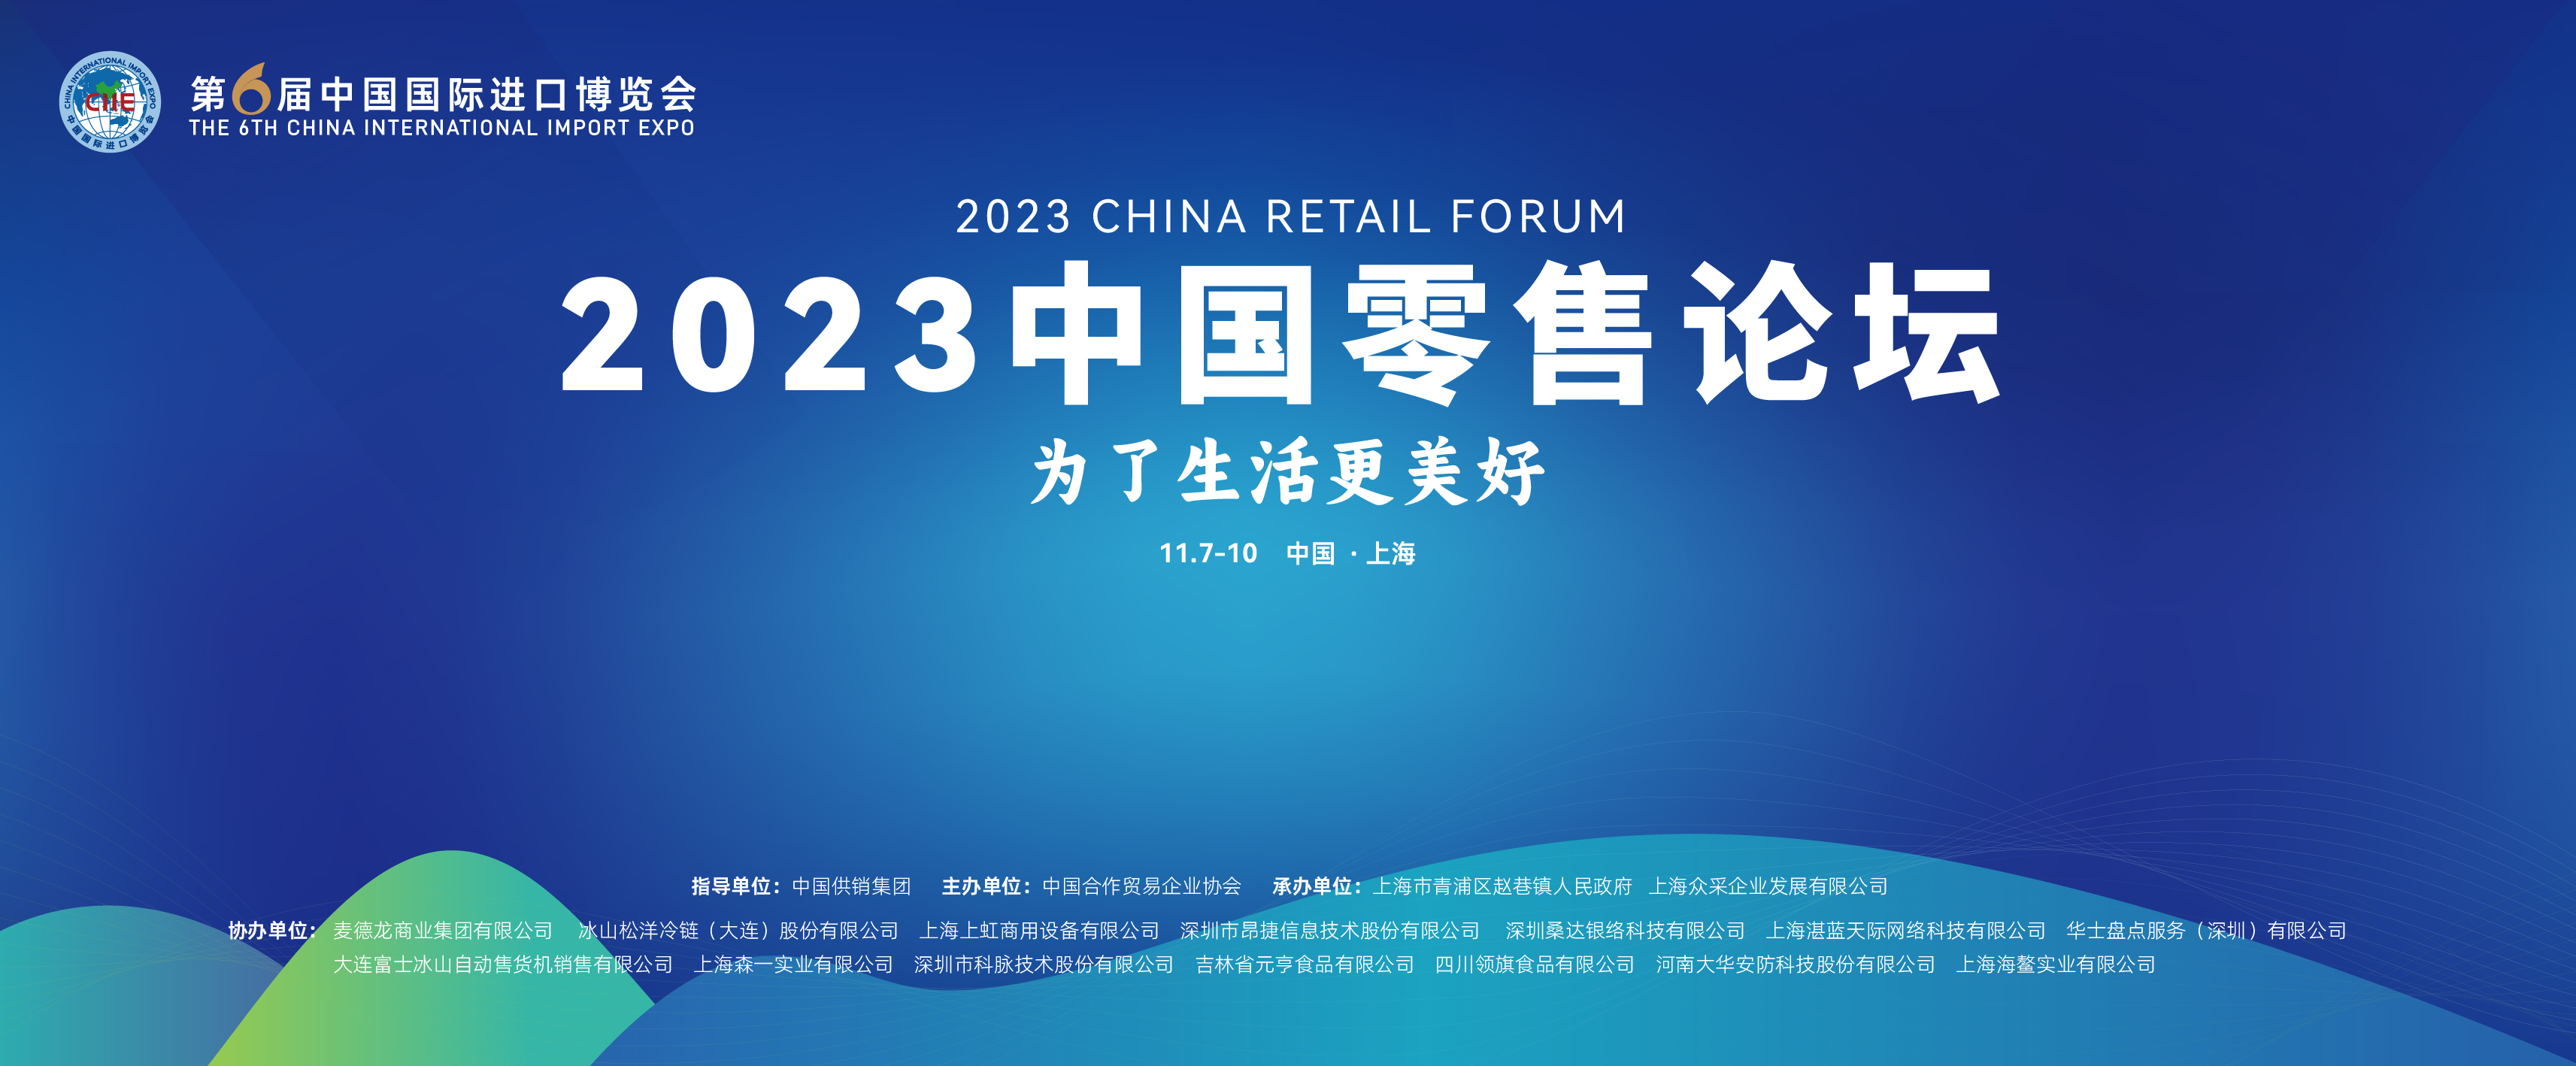 2023中国零售论坛在上海成功举办